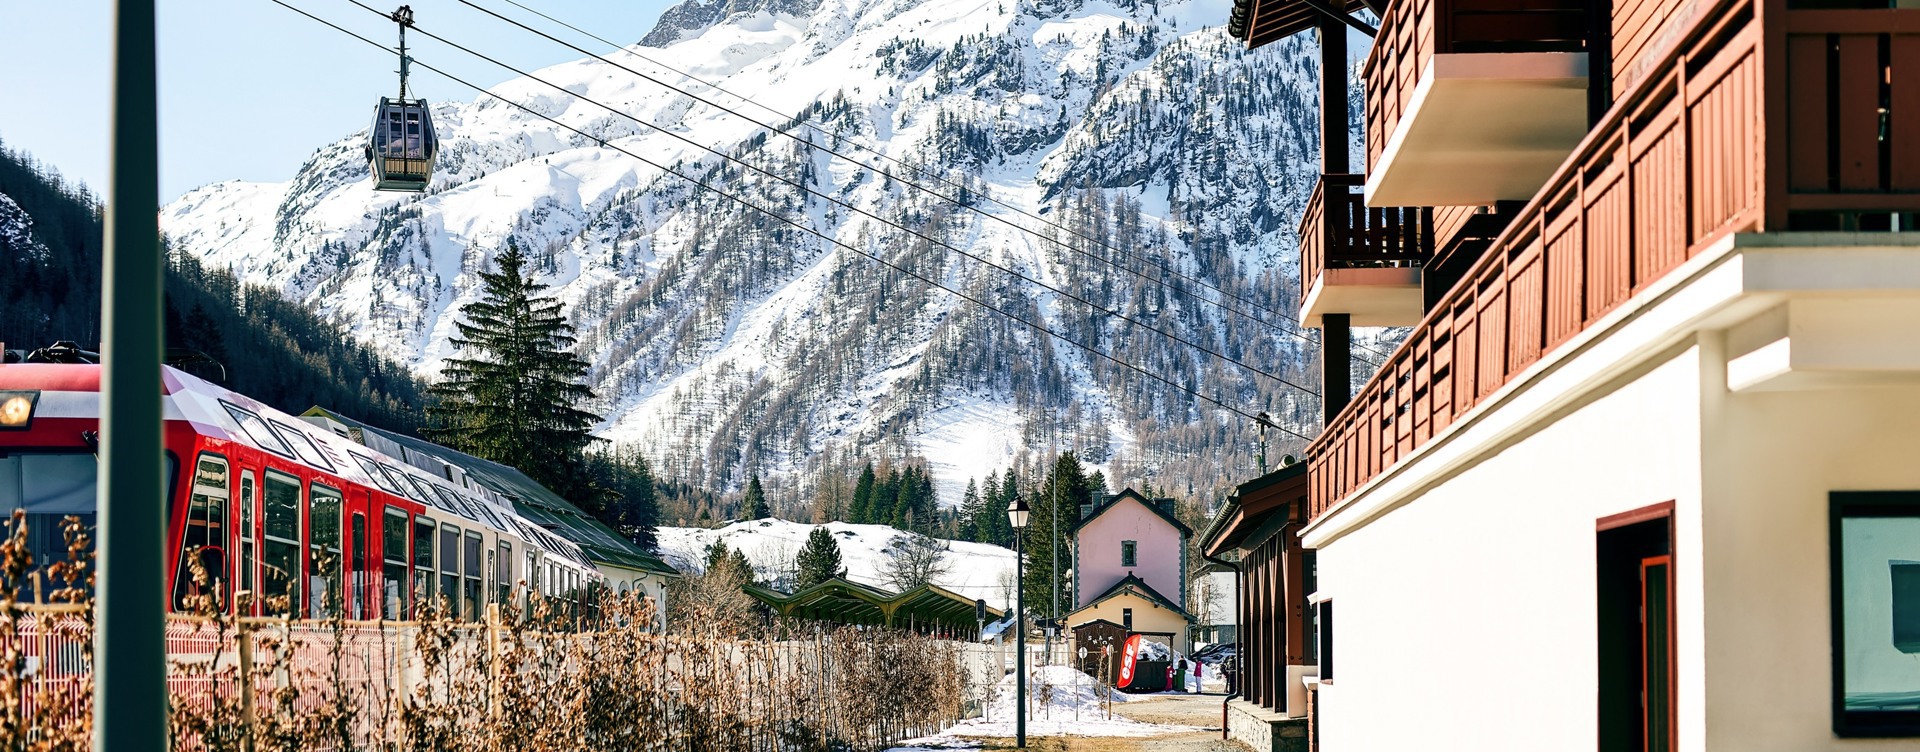 Passez un moment convivial dans le centre animé de Chamonix
ou dans les stations de ski environnante